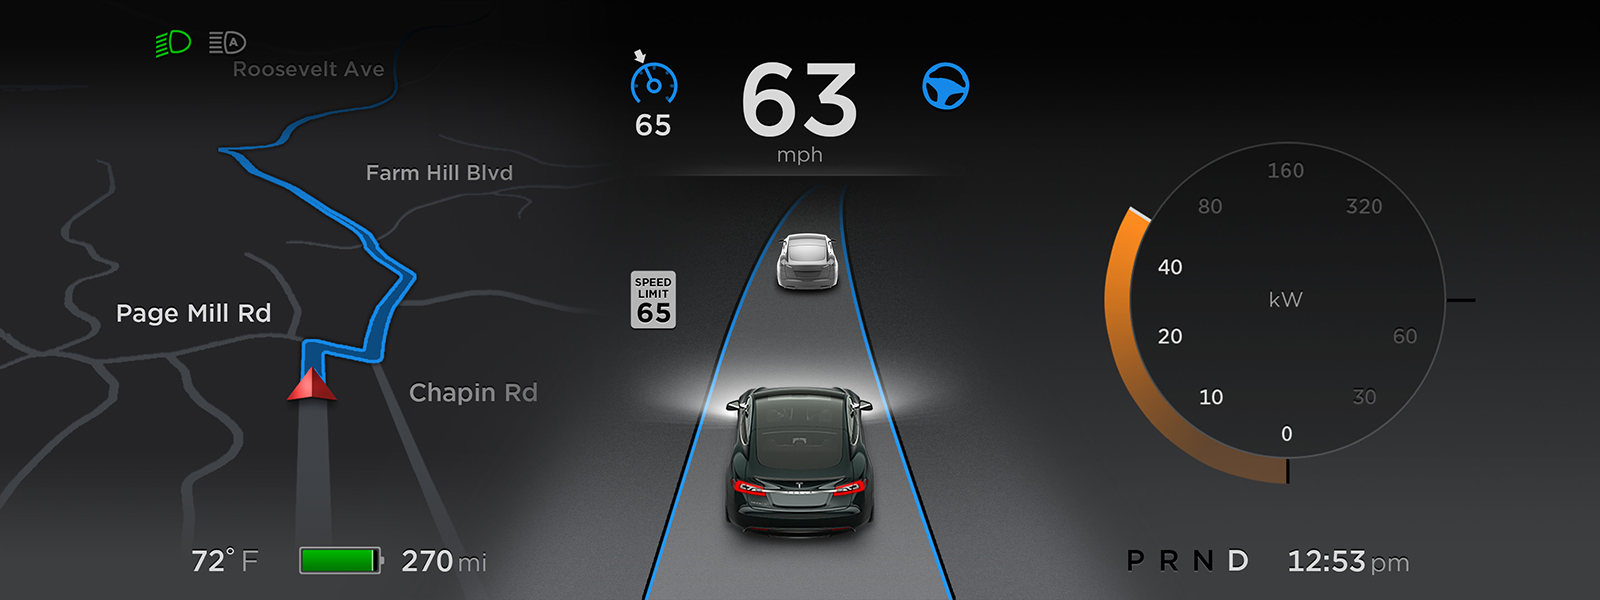 Tesla Autopilot Display